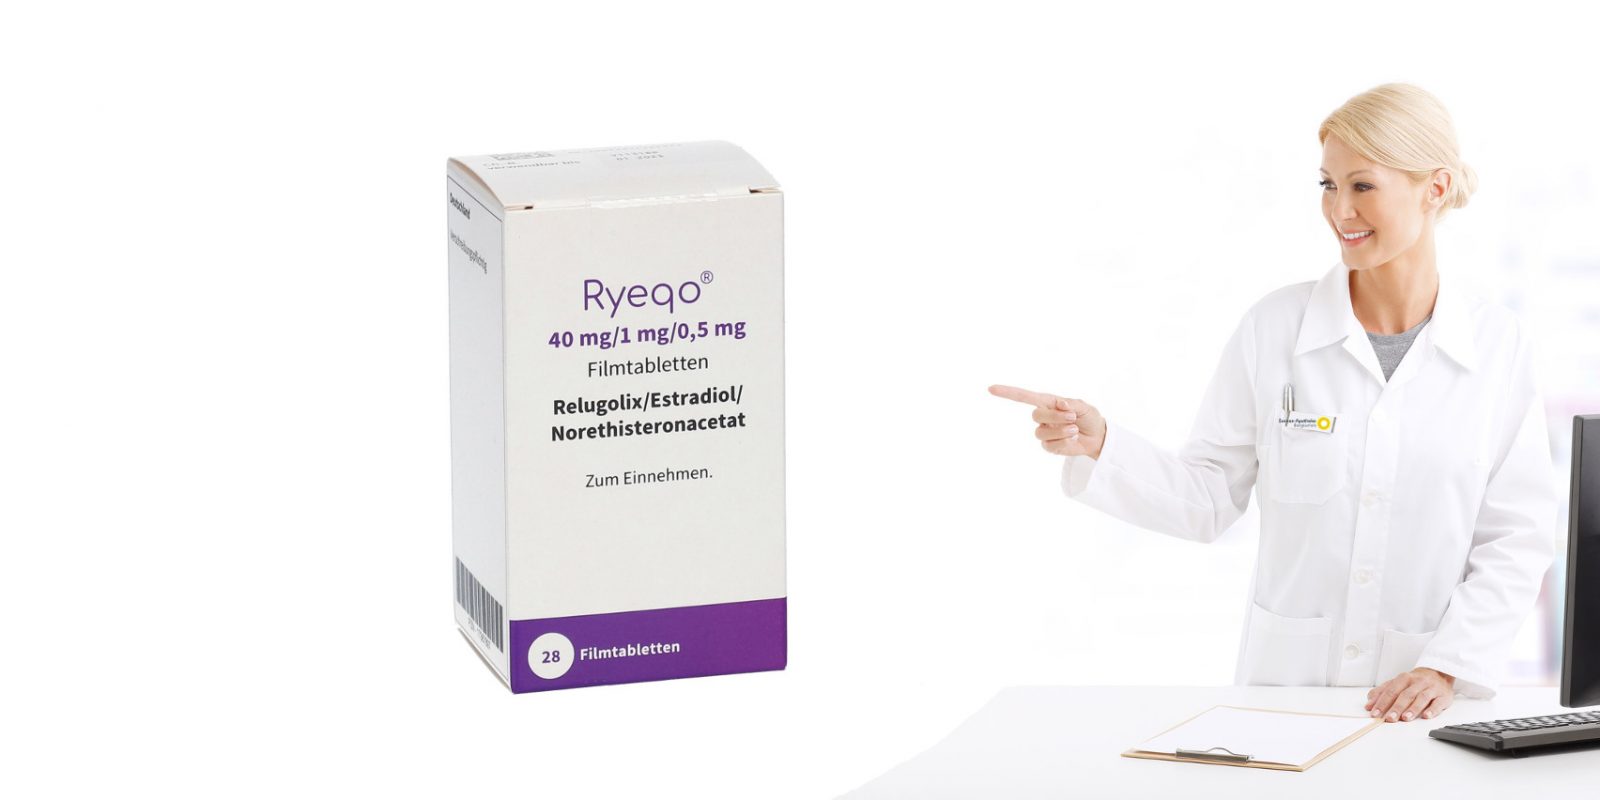 Ryego: Tablette gegen starke Periodenblutungen